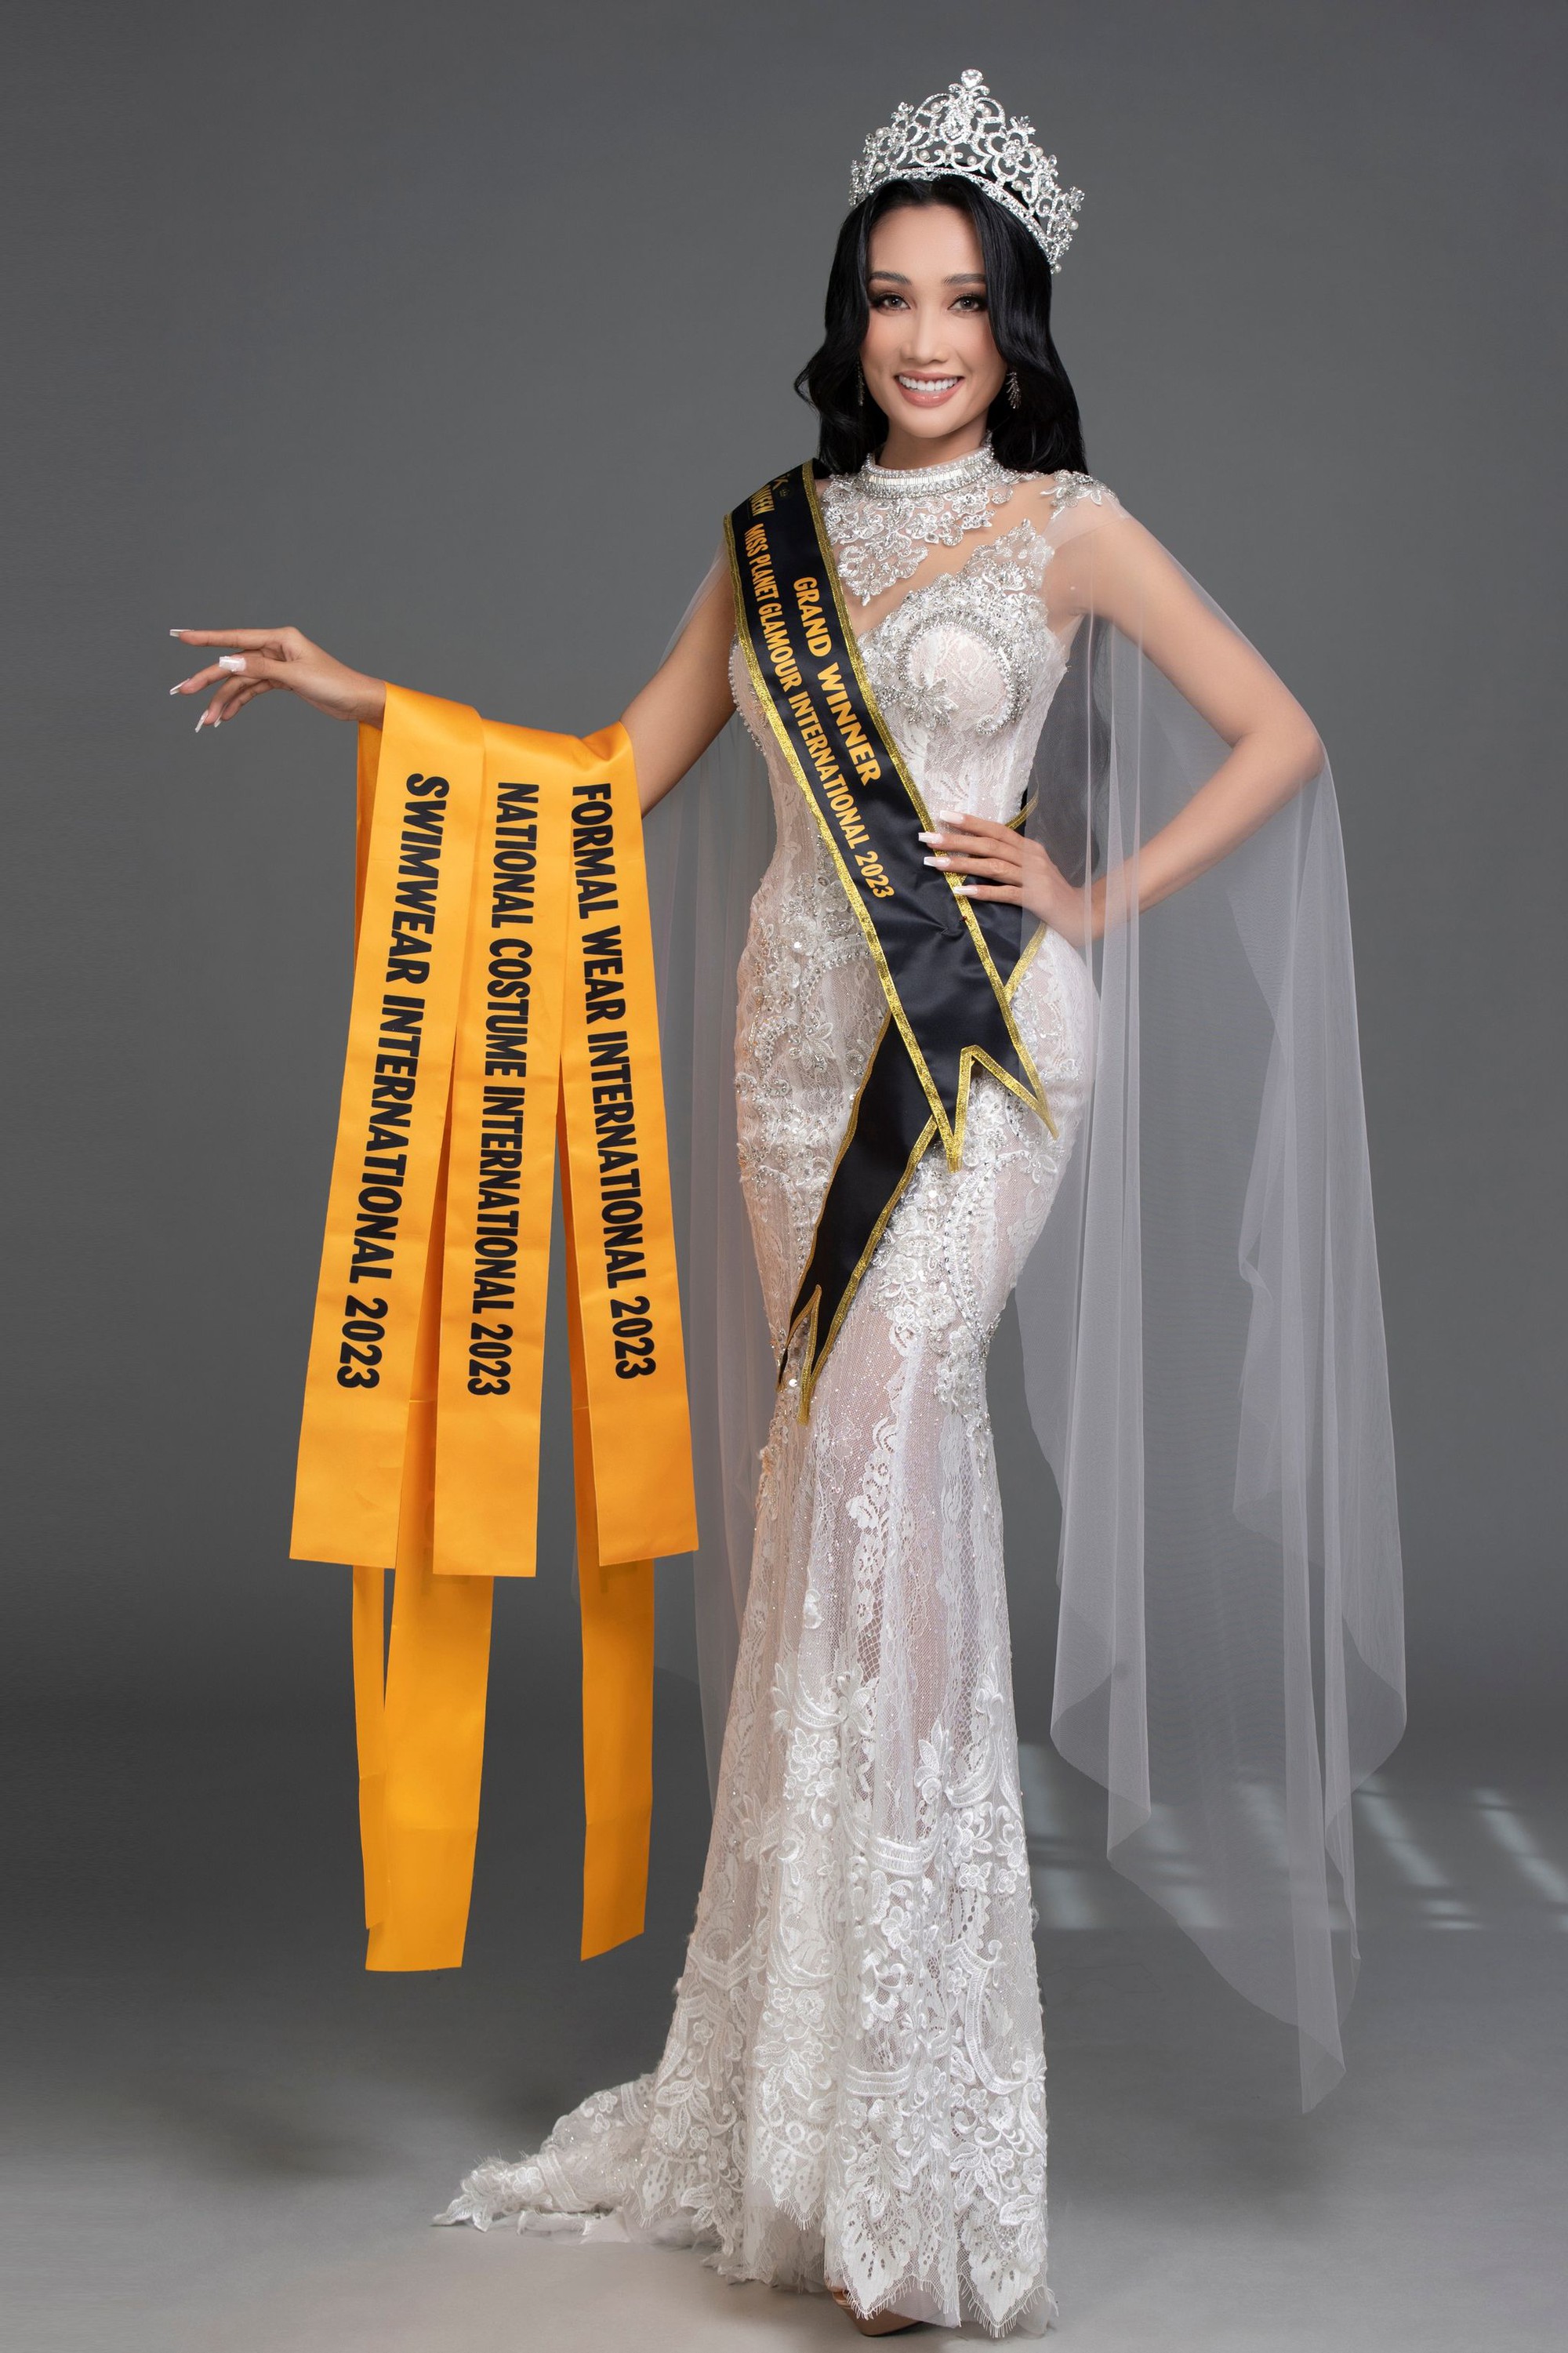 Miss Planet Glamour International Huỳnh Thi và hành trình bền bỉ chạm đến vương miện - Ảnh 2.